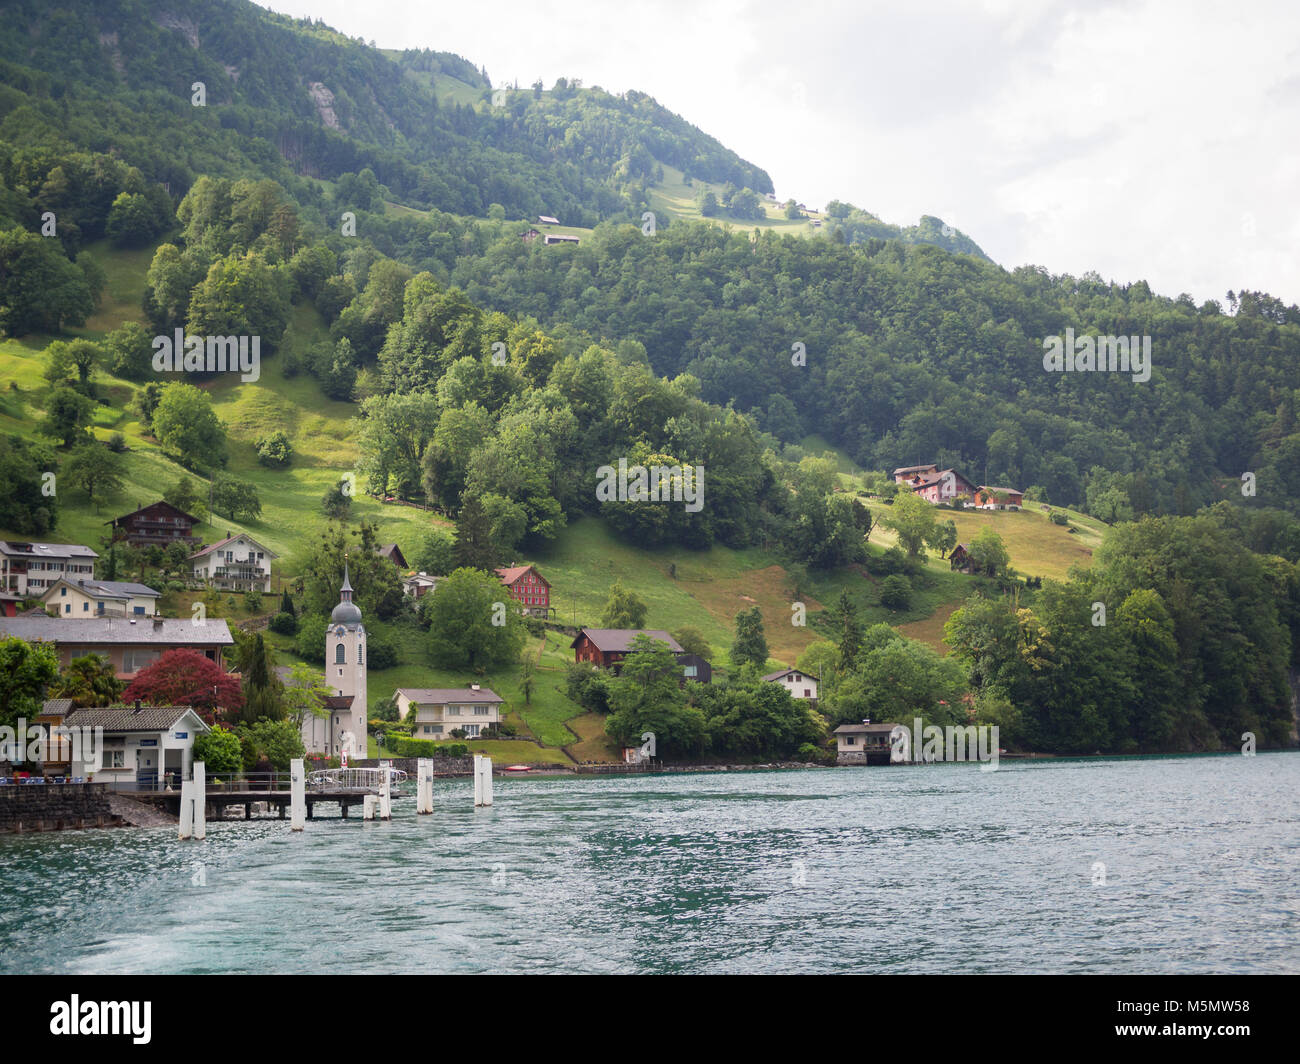 Bauen by Lake Luzern Stock Photo